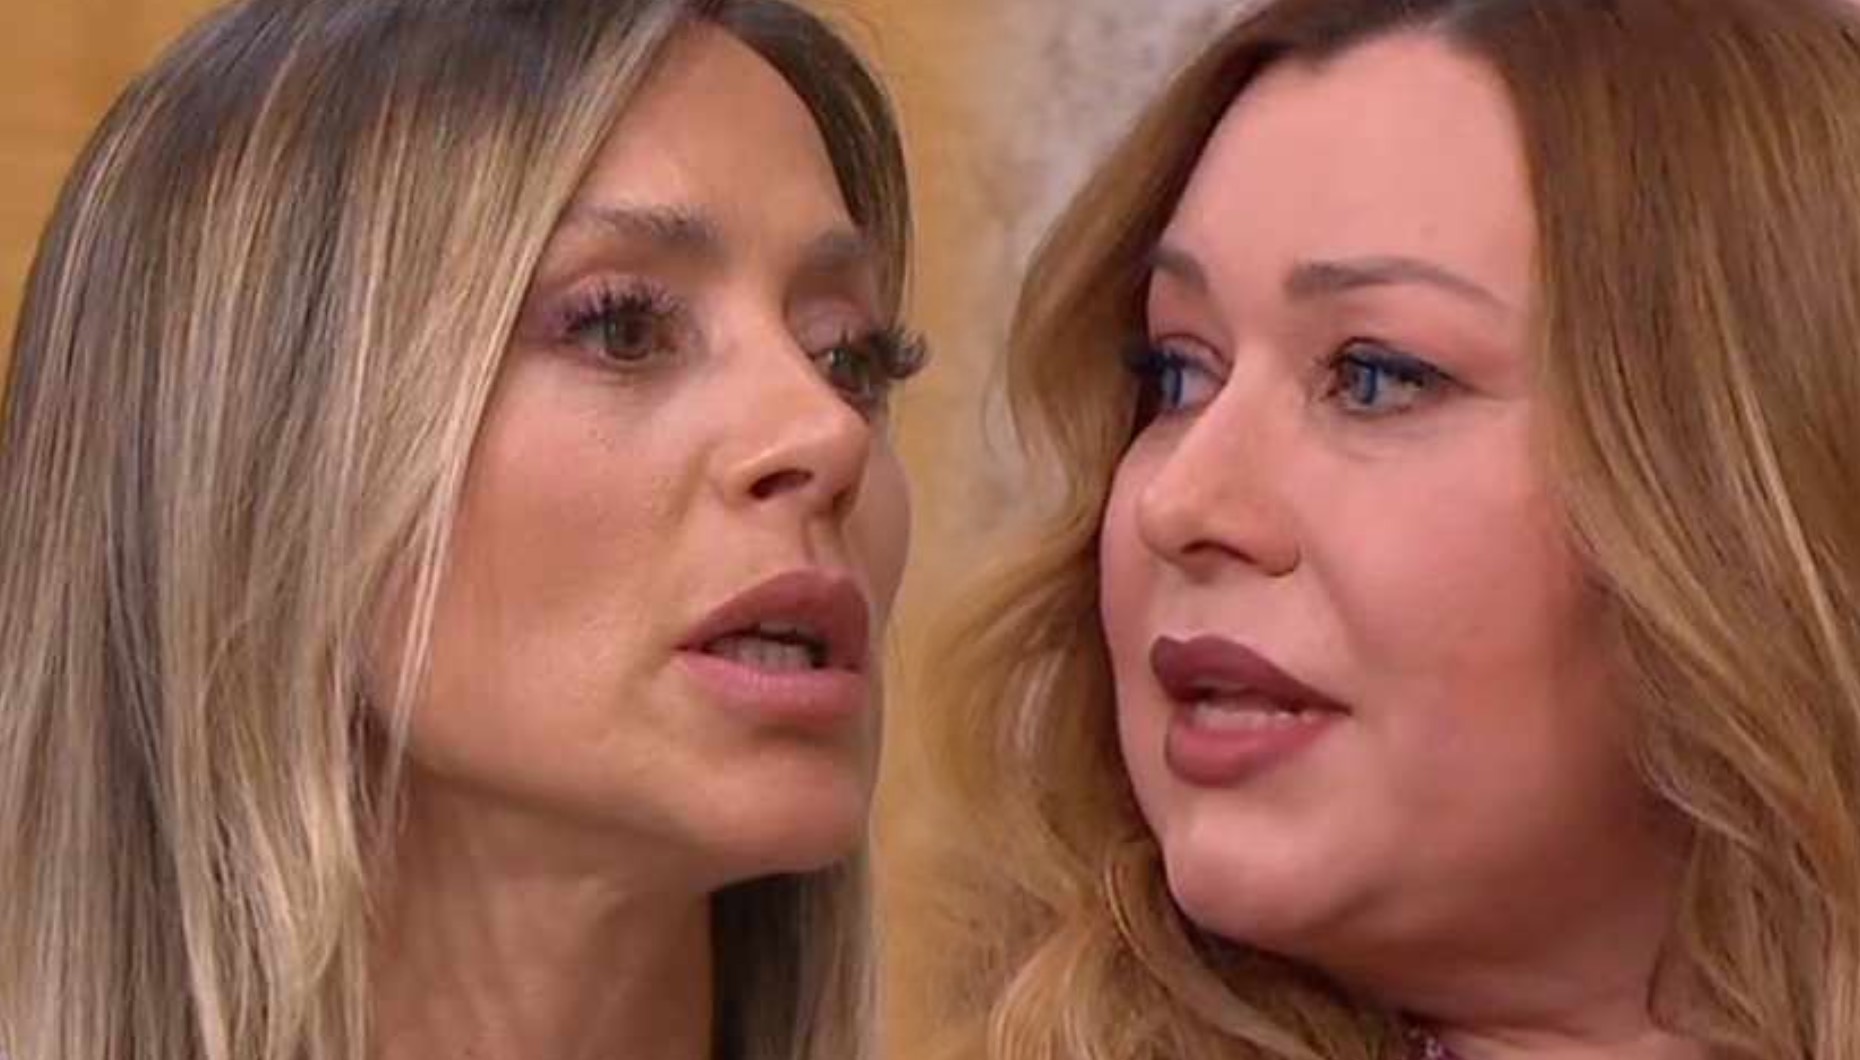 Joana Amaral Dias e Suzana Garcia desentendem-se em direto: “A TVI não pode consentir”